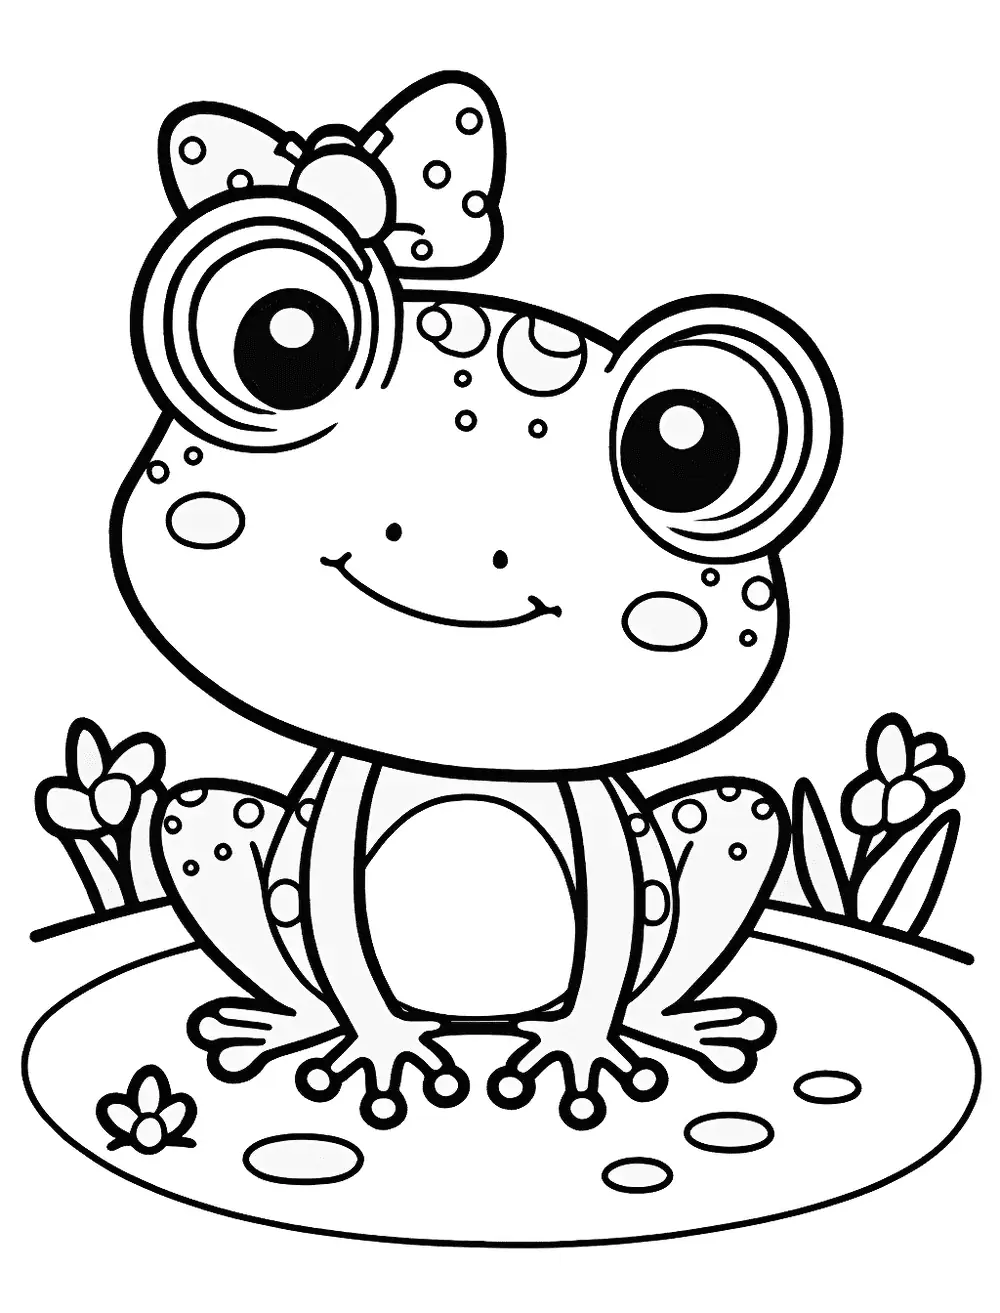 Dibujos para Colorear Hello Kitty Frog